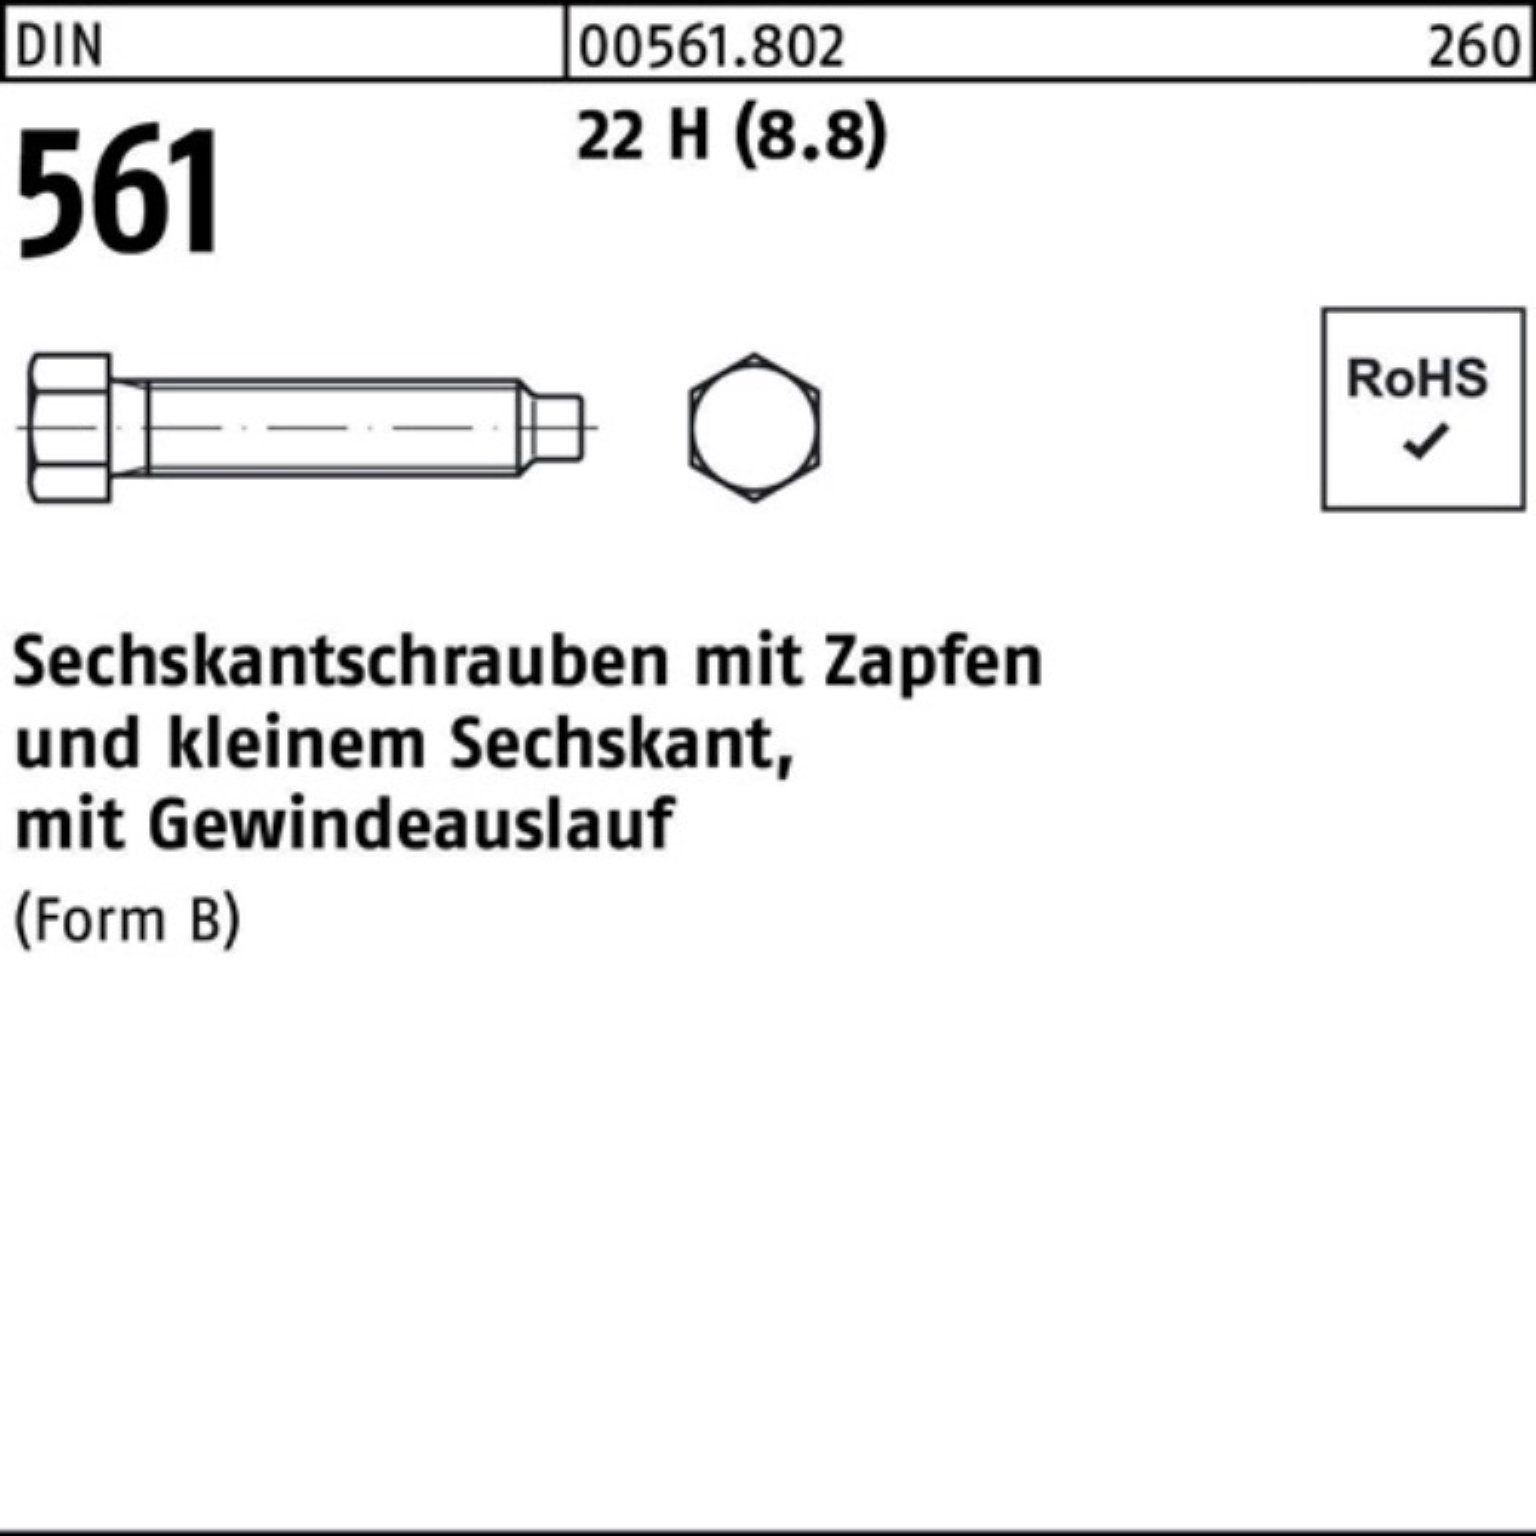 Sechskantschraube Sechskantschraube 561 (8.8) H 50 Pack St 100er 60 22 BM Reyher DIN Zapfen 8x